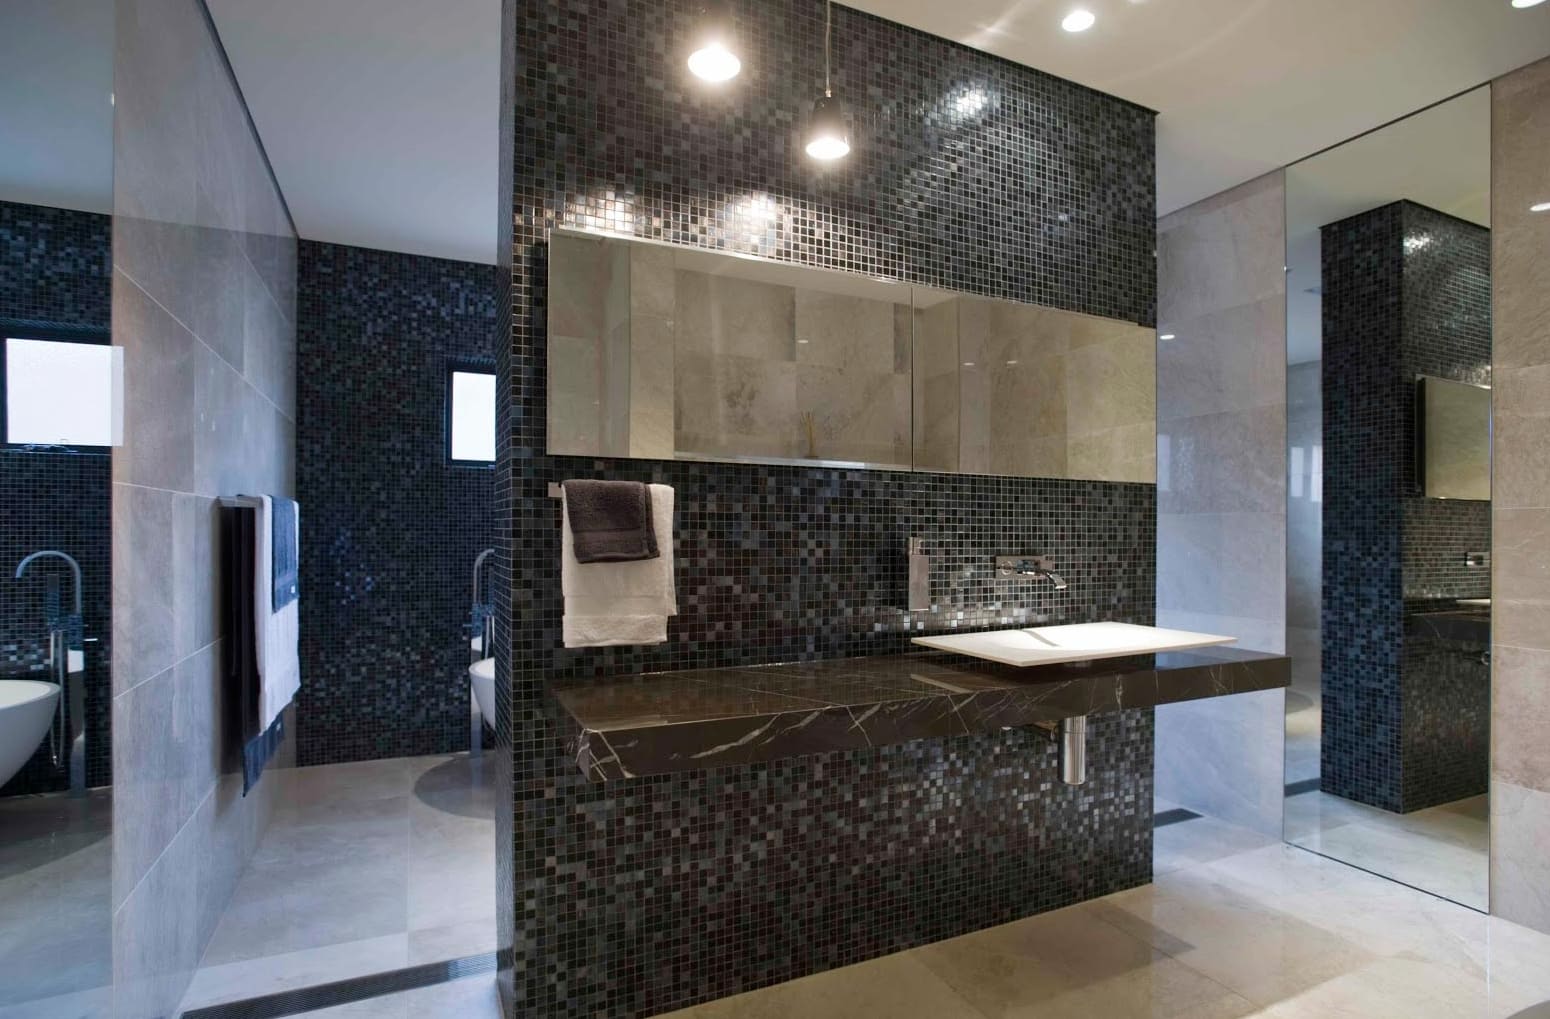 Mozaikok egy tágas fürdőszobában